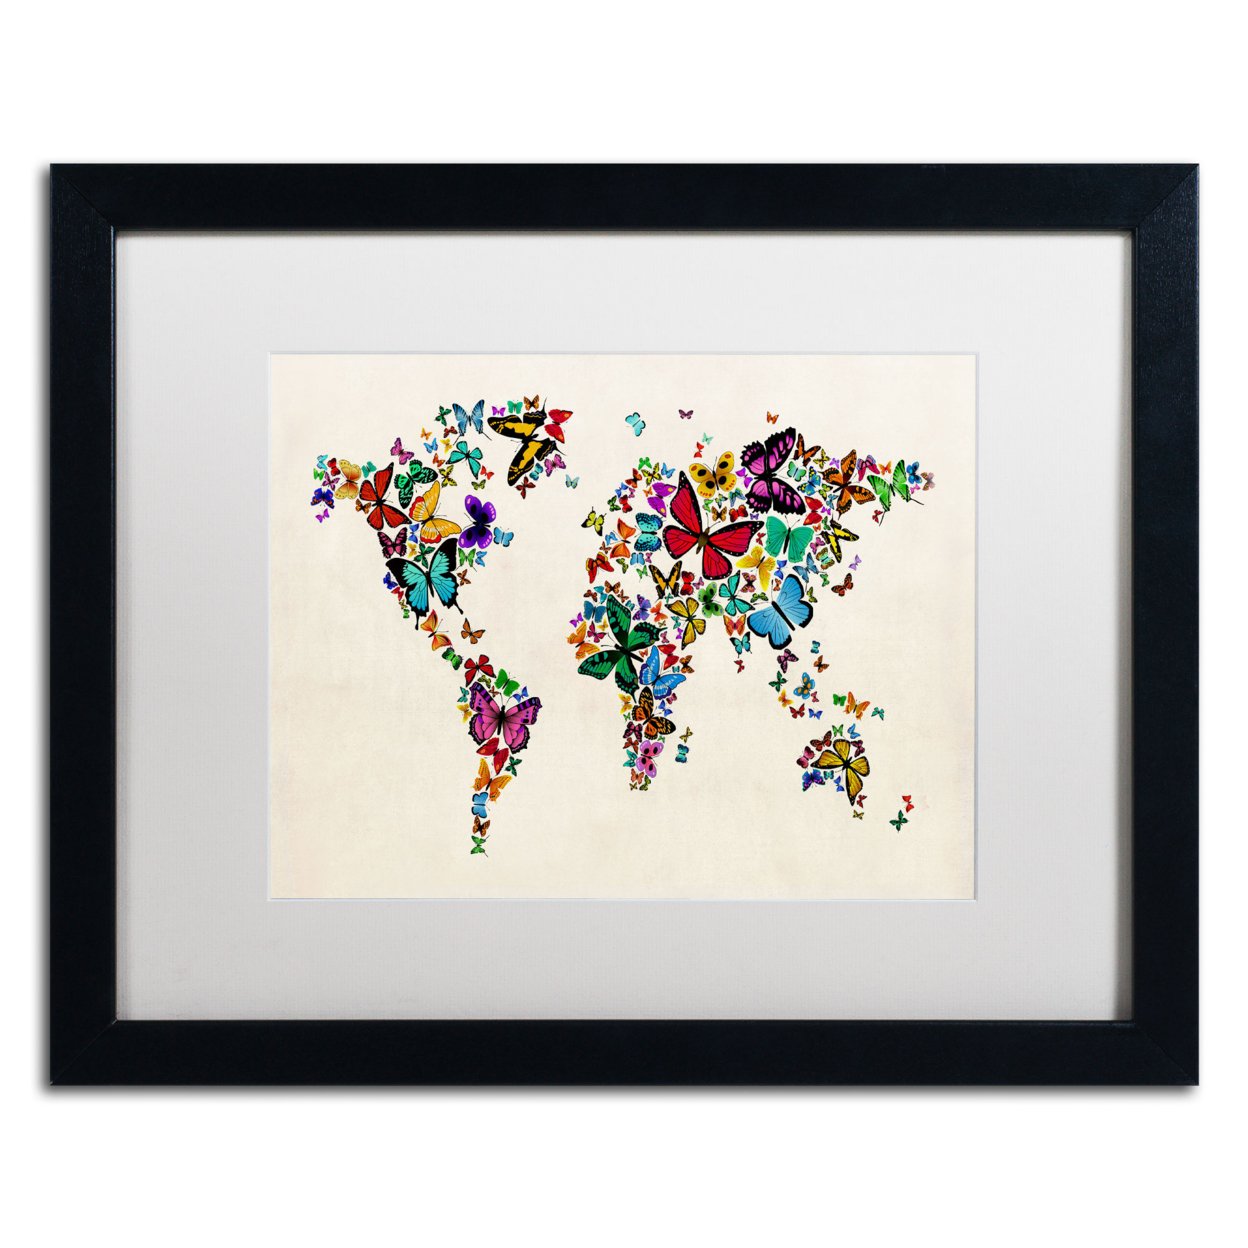 Michael Tompsett 'Butterflies Map Of The World II' Black Wooden Framed Art 18 X 22 Inches